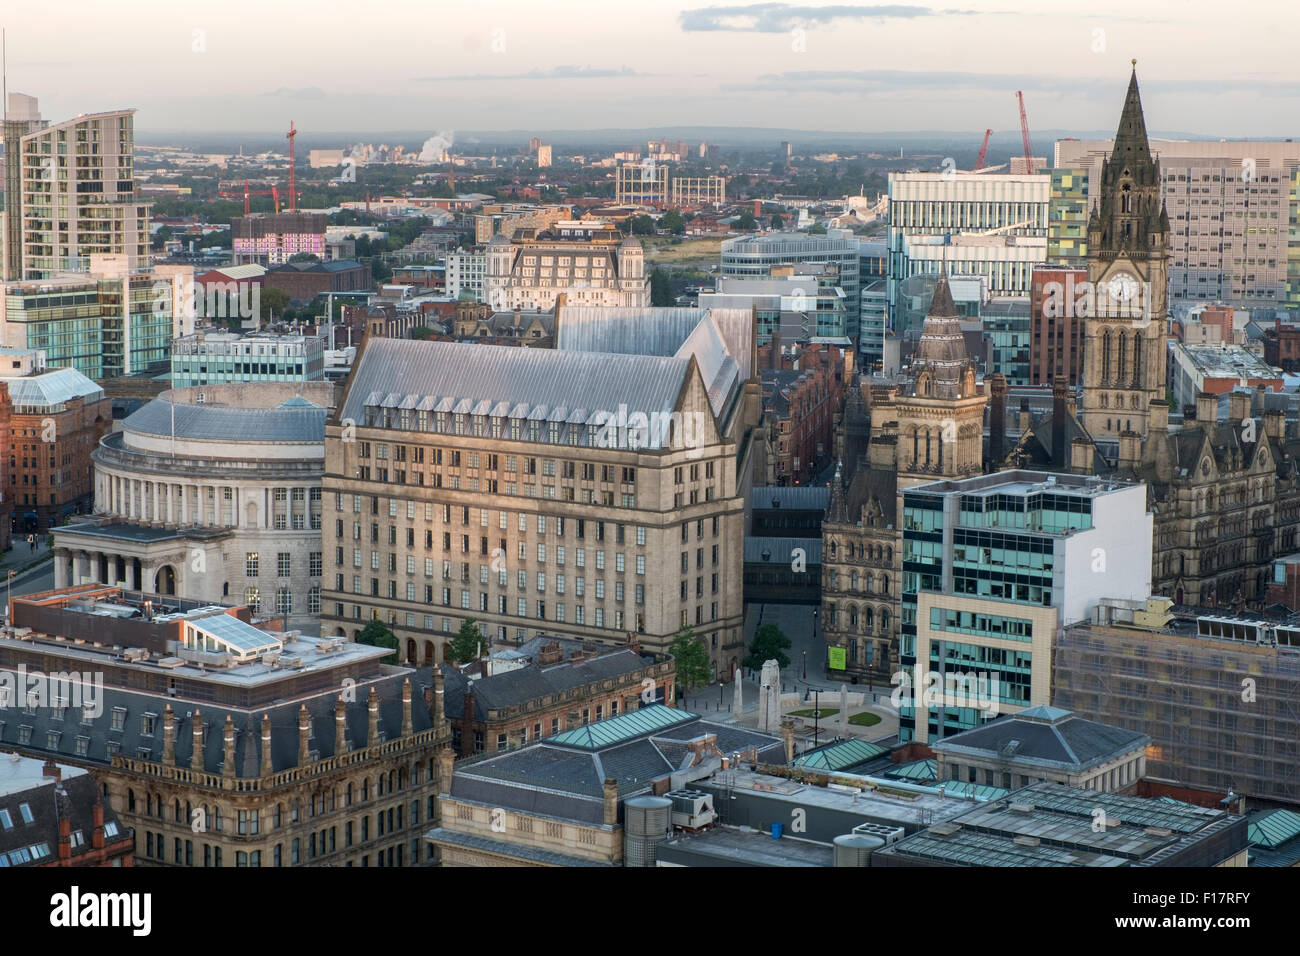 Alto mirador vista sobre el centro de la ciudad de Manchester Foto de stock